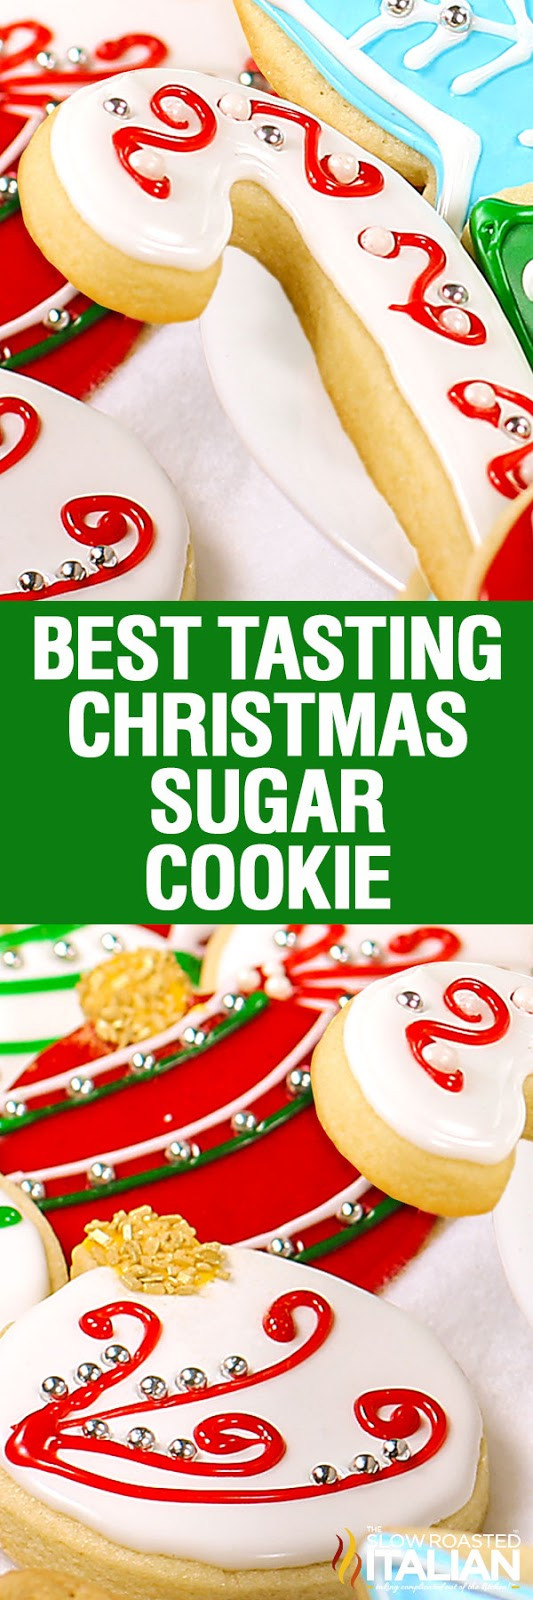 Best Tasting Christmas Cookies
 Christmas Sugar Cookies With NEW VIDEO